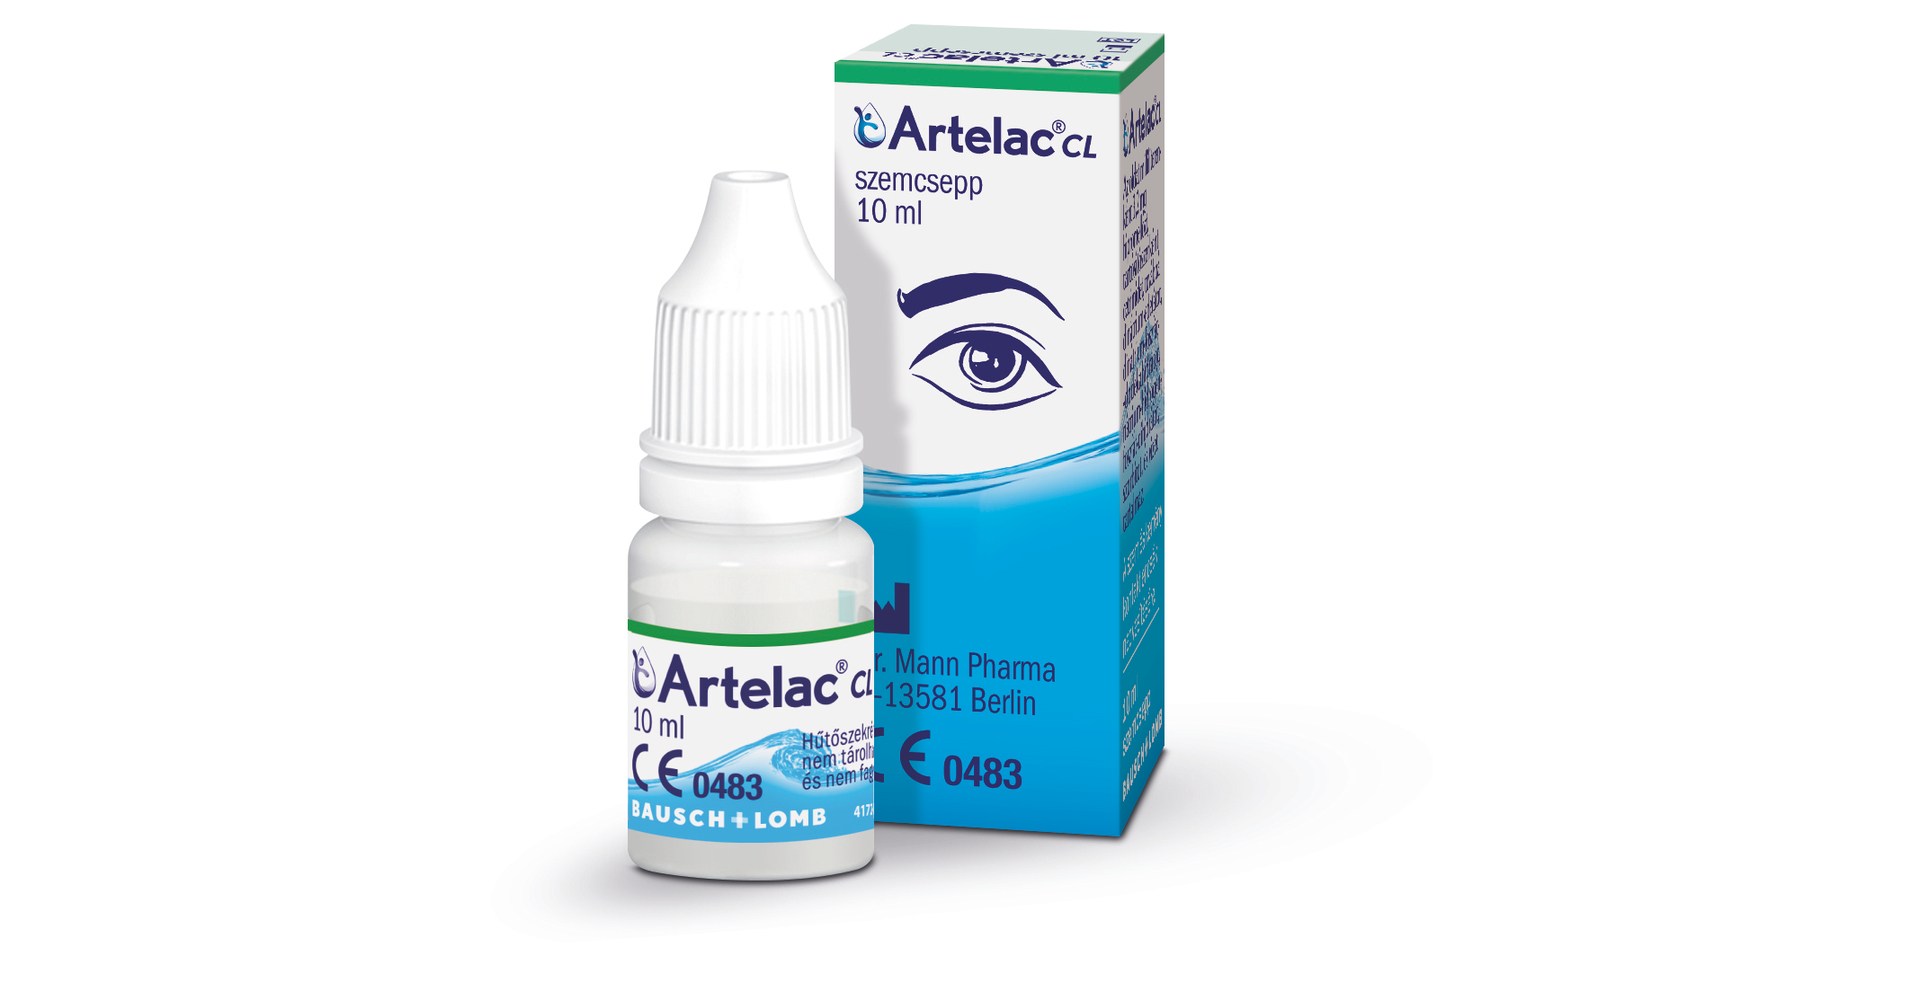 artelac cl szemcsepp 10 ml anti aging fluoroxigén kezelés